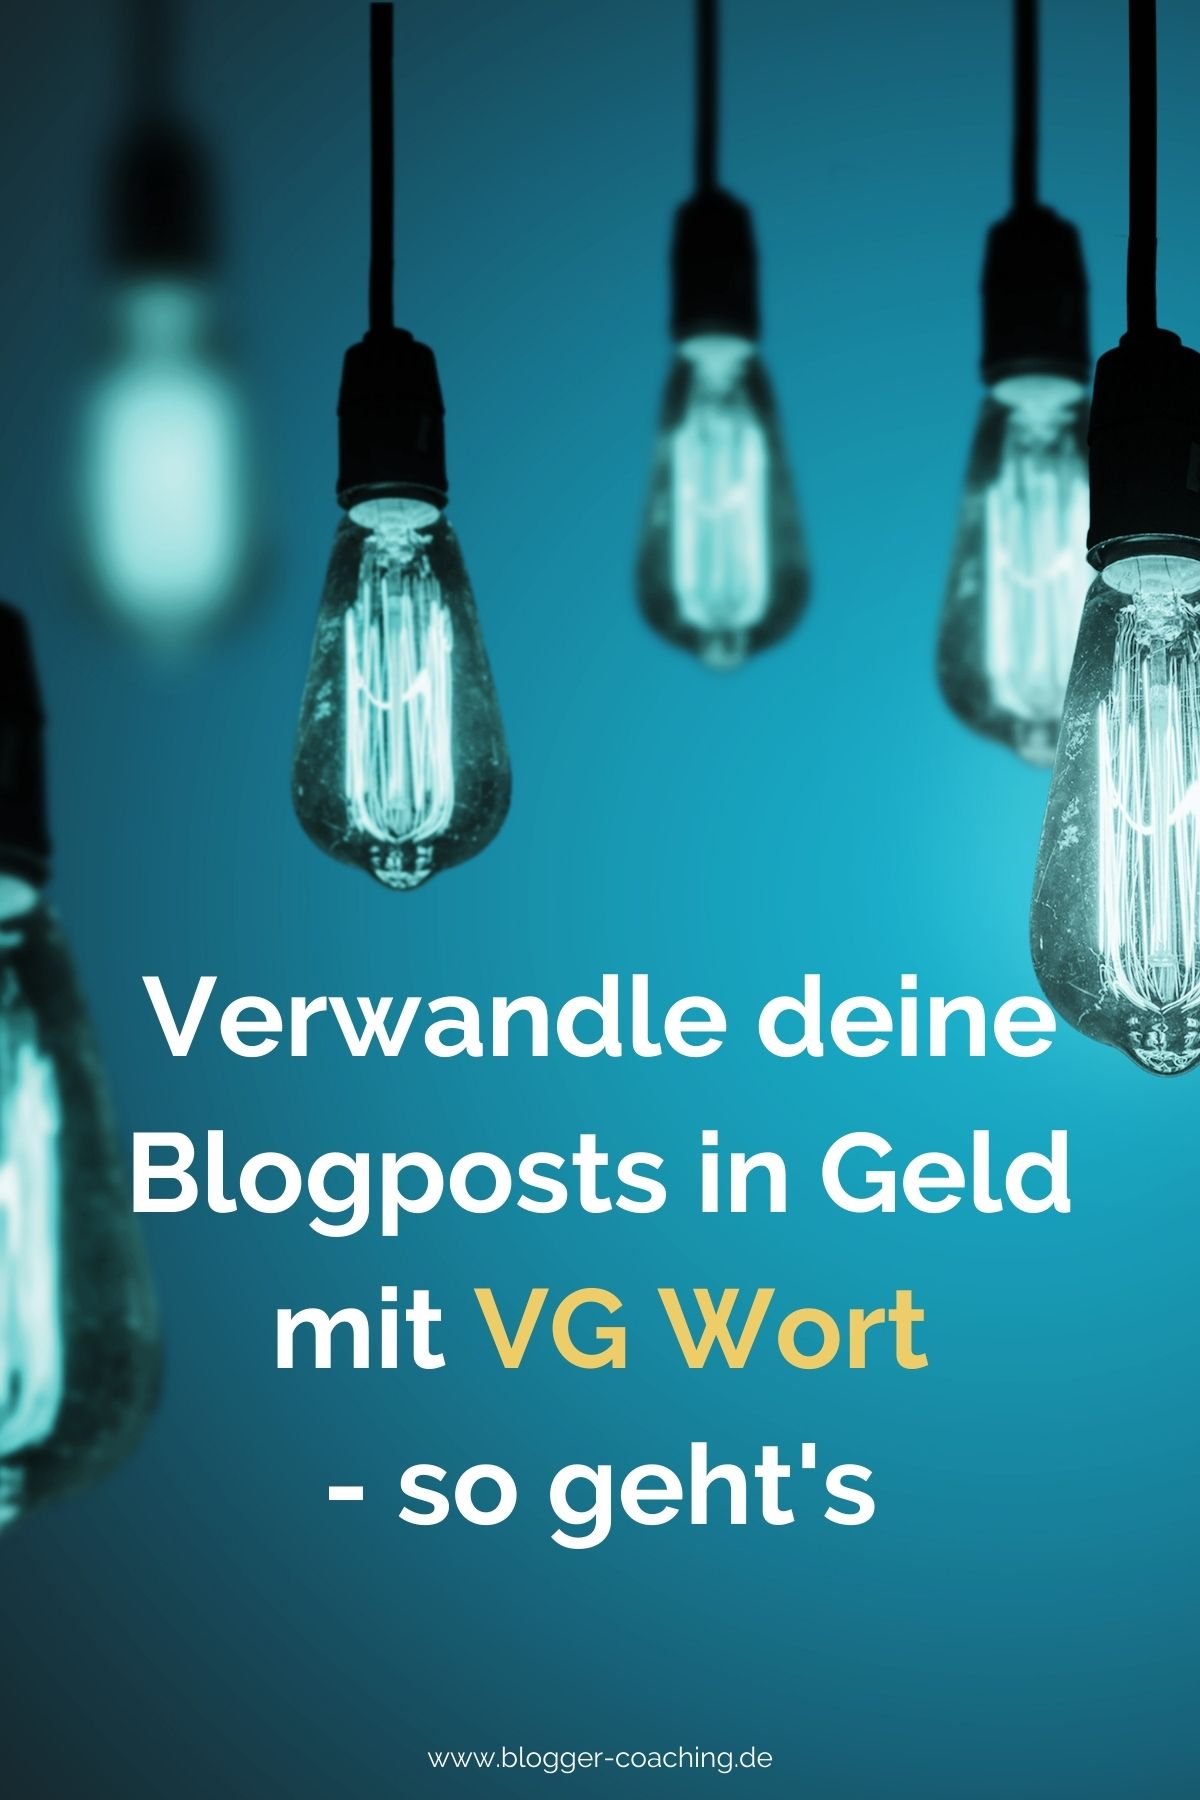 VG Wort - Nebenher Geld verdienen mit dem Blog | Blogger-Coaching.de - Dein Weg zum Blog-Erfolg #blogger #erfolg